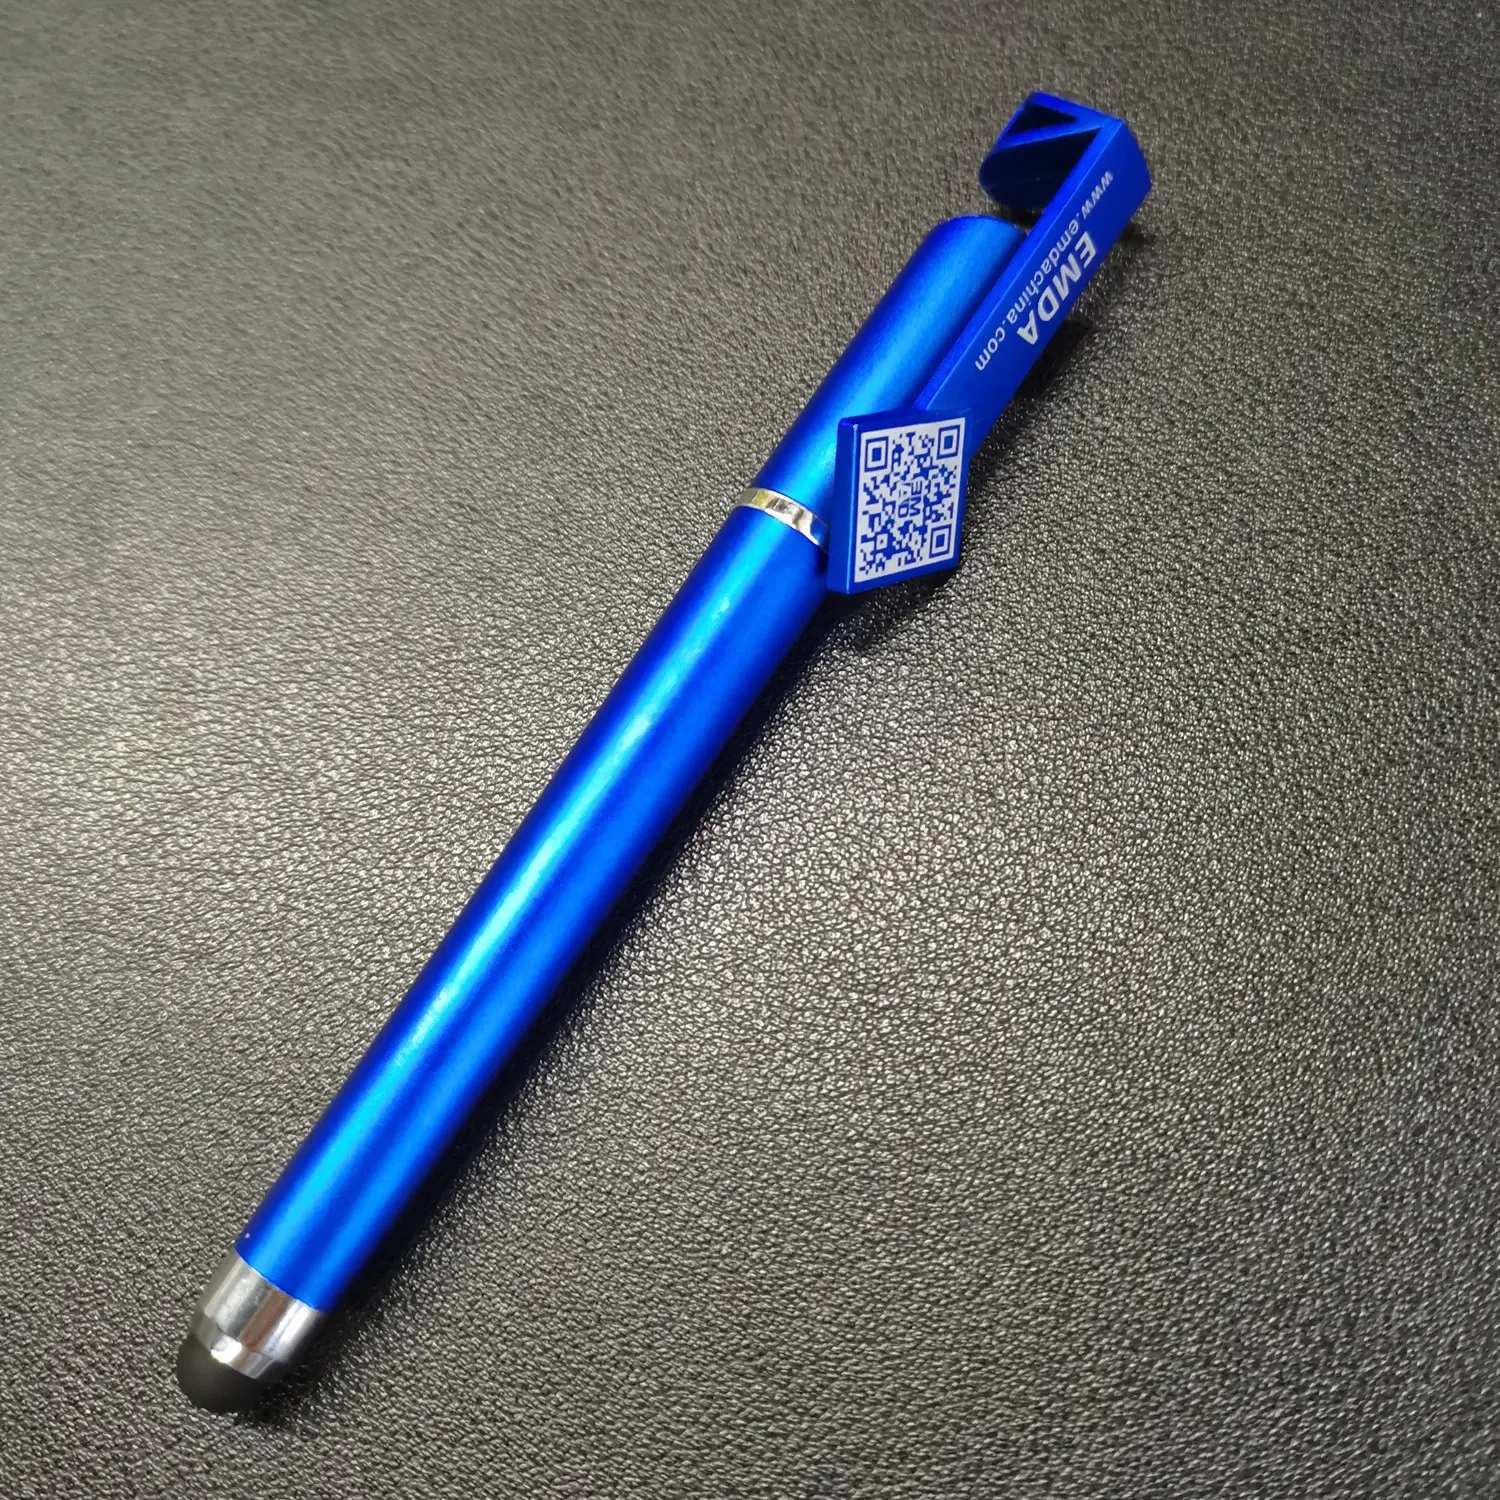 Commercio all'ingrosso schermo soft touch stylus penne porta telefono ufficio gel penna blu 3 in 1 multi funzione penne con logo personalizzato